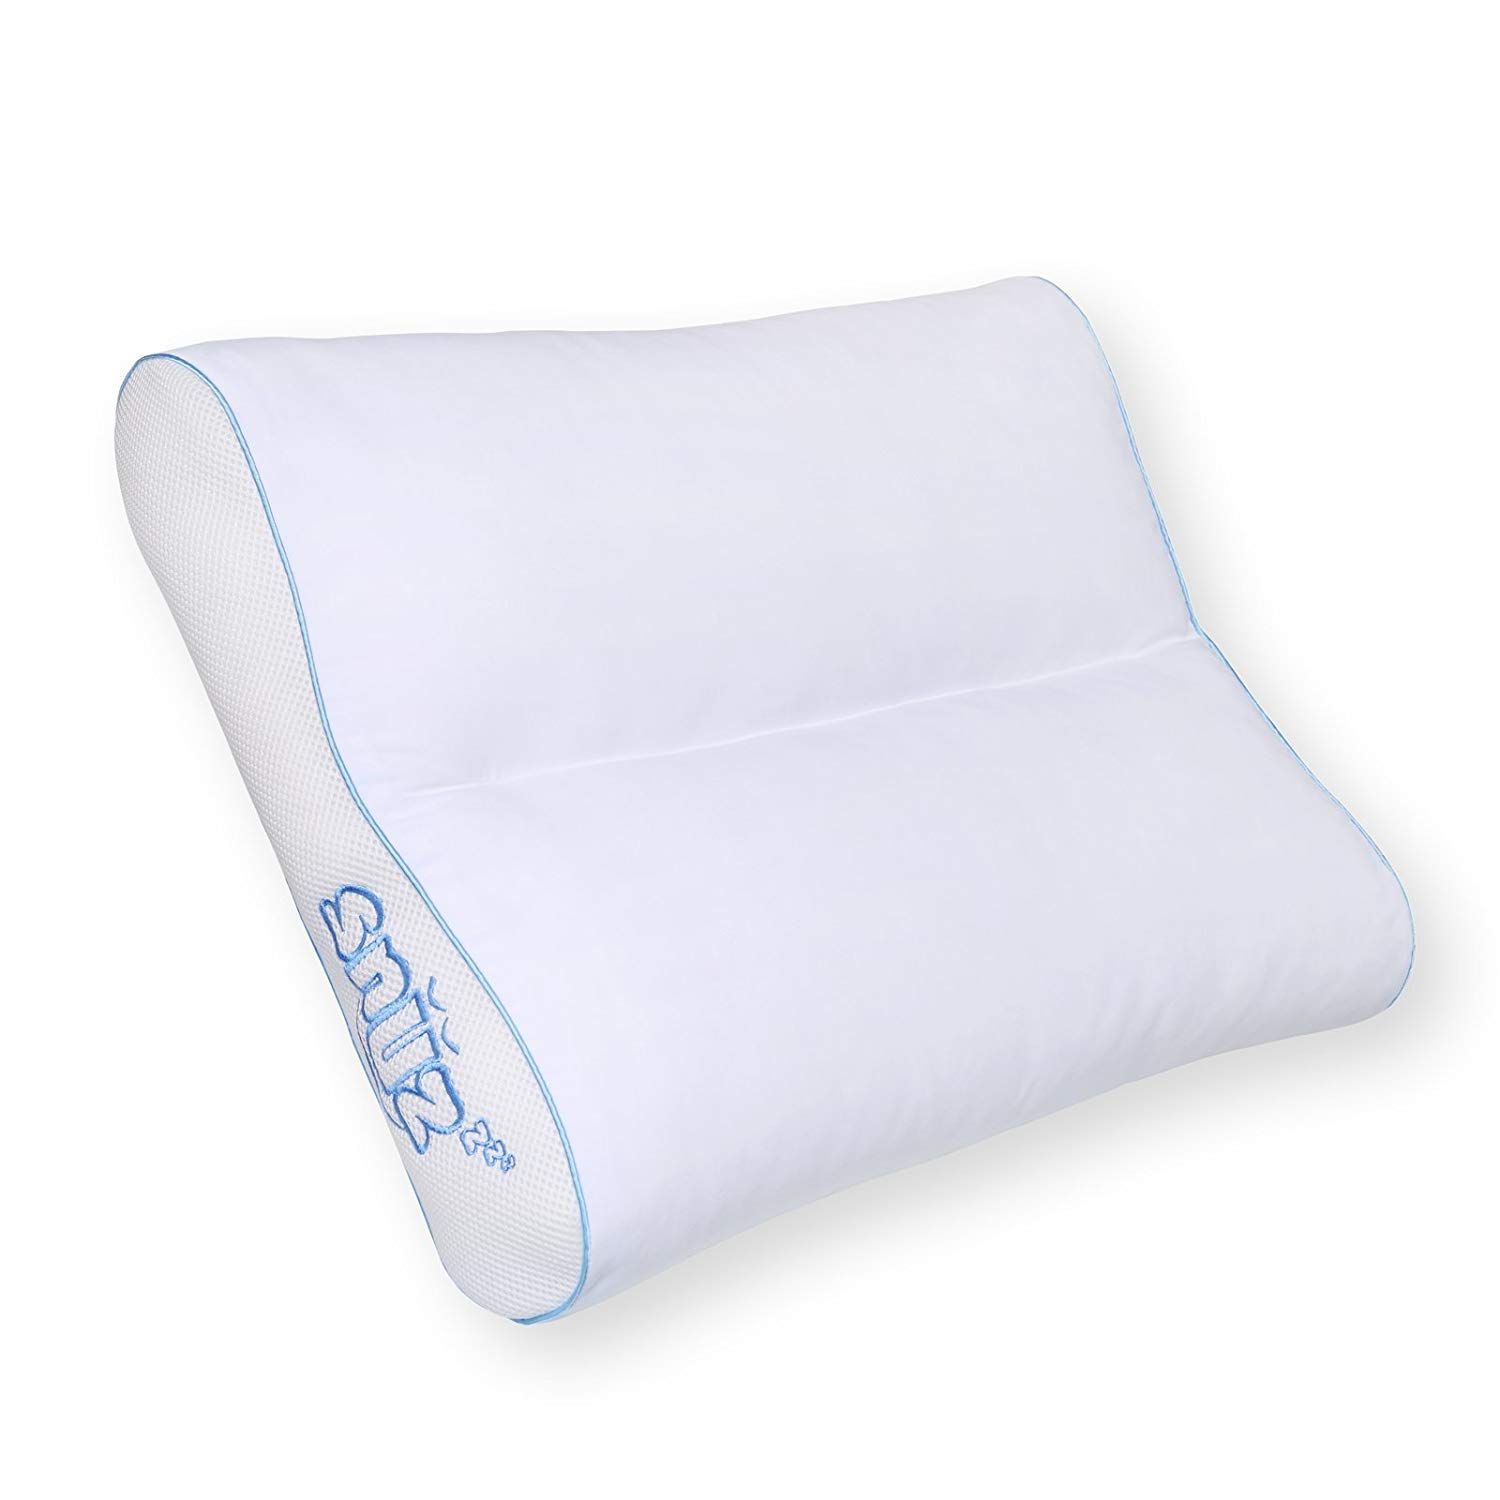 The SNÜZ Pillow